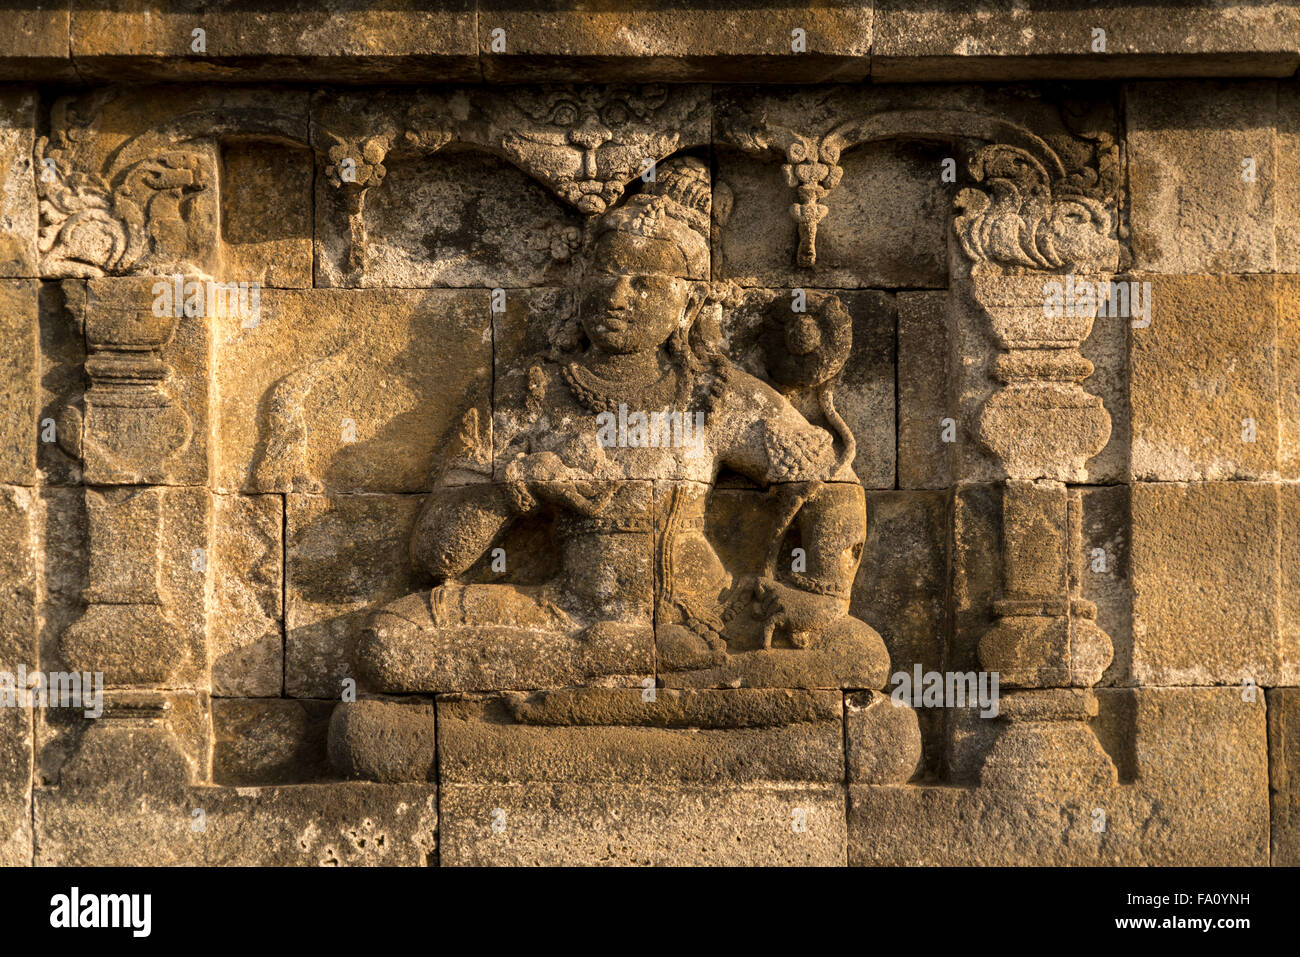 Soulagement à la 9e siècle près de Borobudur Temple bouddhiste Mahayana, Yogyakarta, Java centrale, Indonésie, Asie Banque D'Images